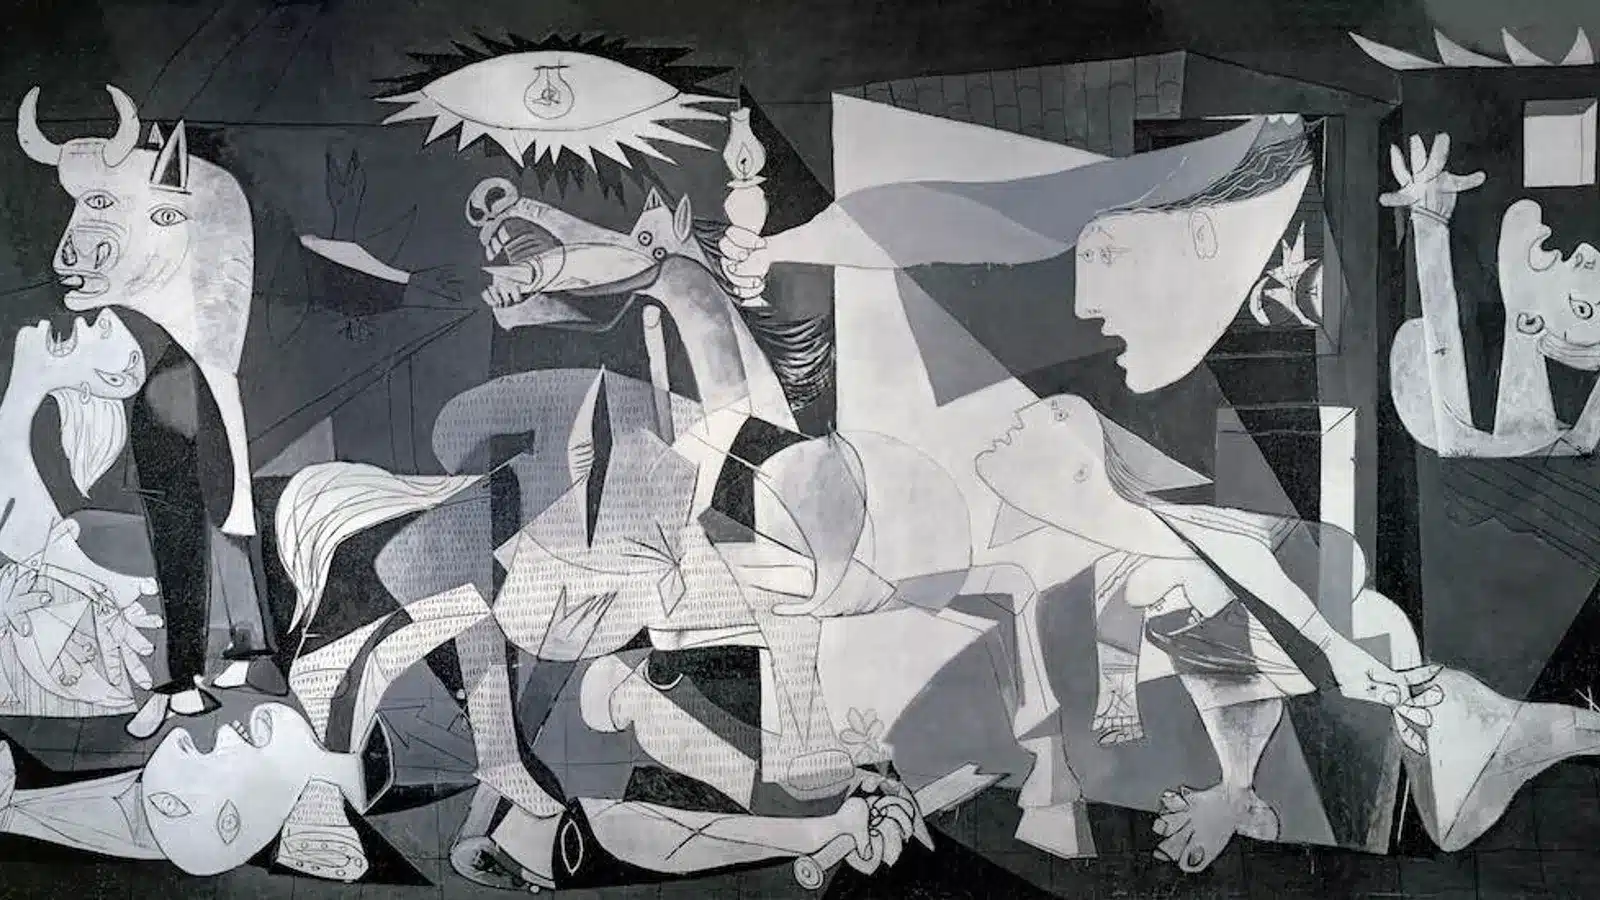 Pablo Picasso, La Guernica, 1937